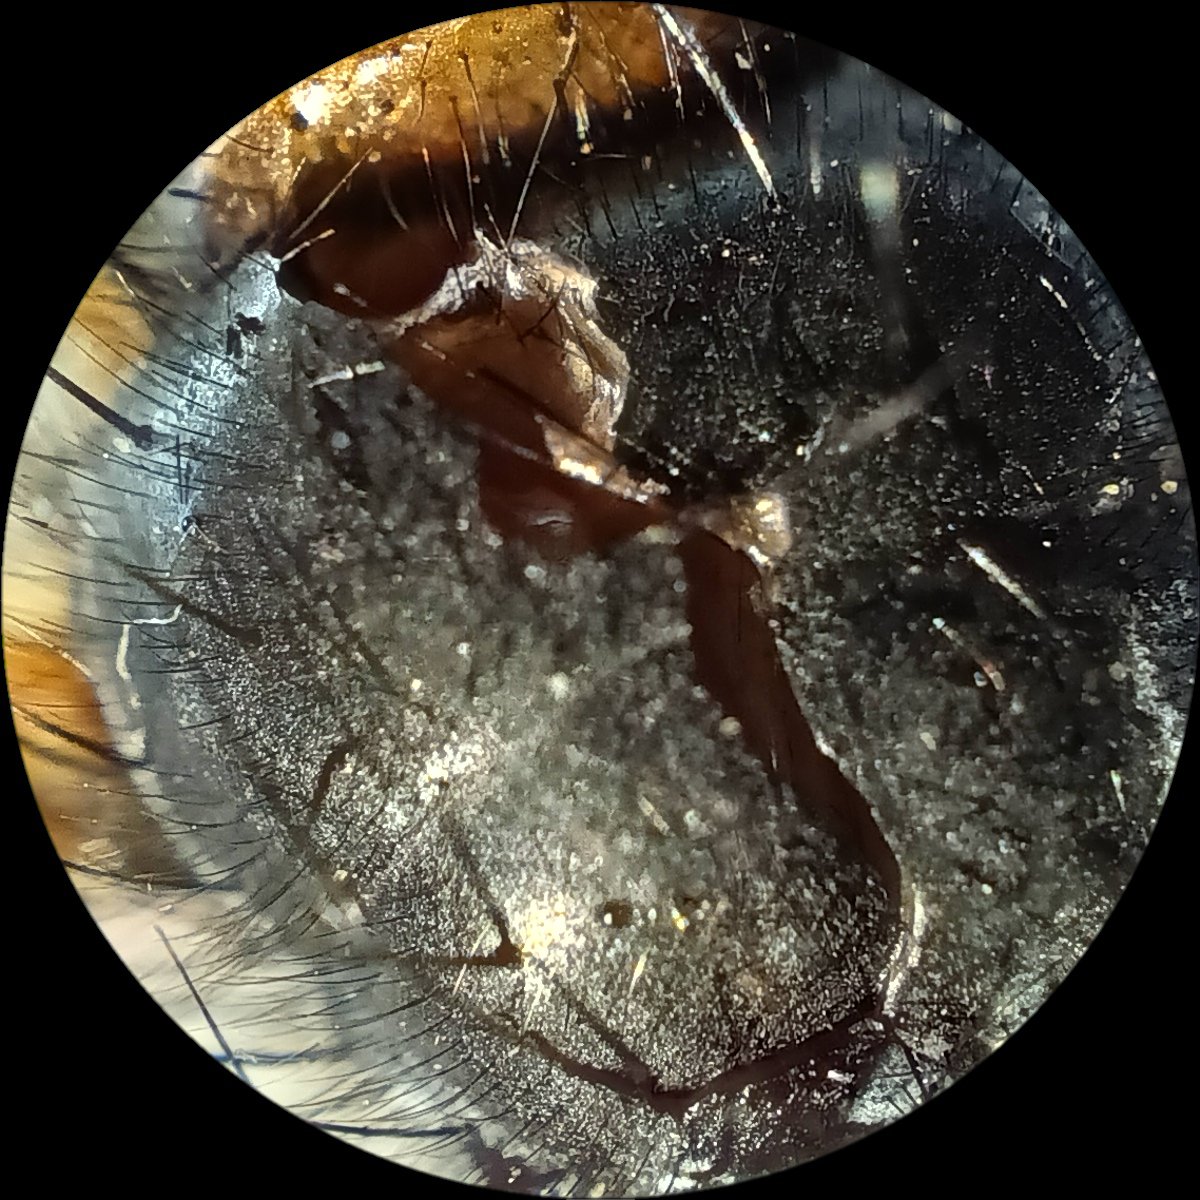 Jestem straszna,ale zabicie muchy,tej dużej, zdarzyło się każdemu..tak zrobiłam zdjęcia zwłokom.Funkcja mikroskopu jest fascynująca!
#photo #mucha #PhotoOfTheWeek #mikroskop #makro